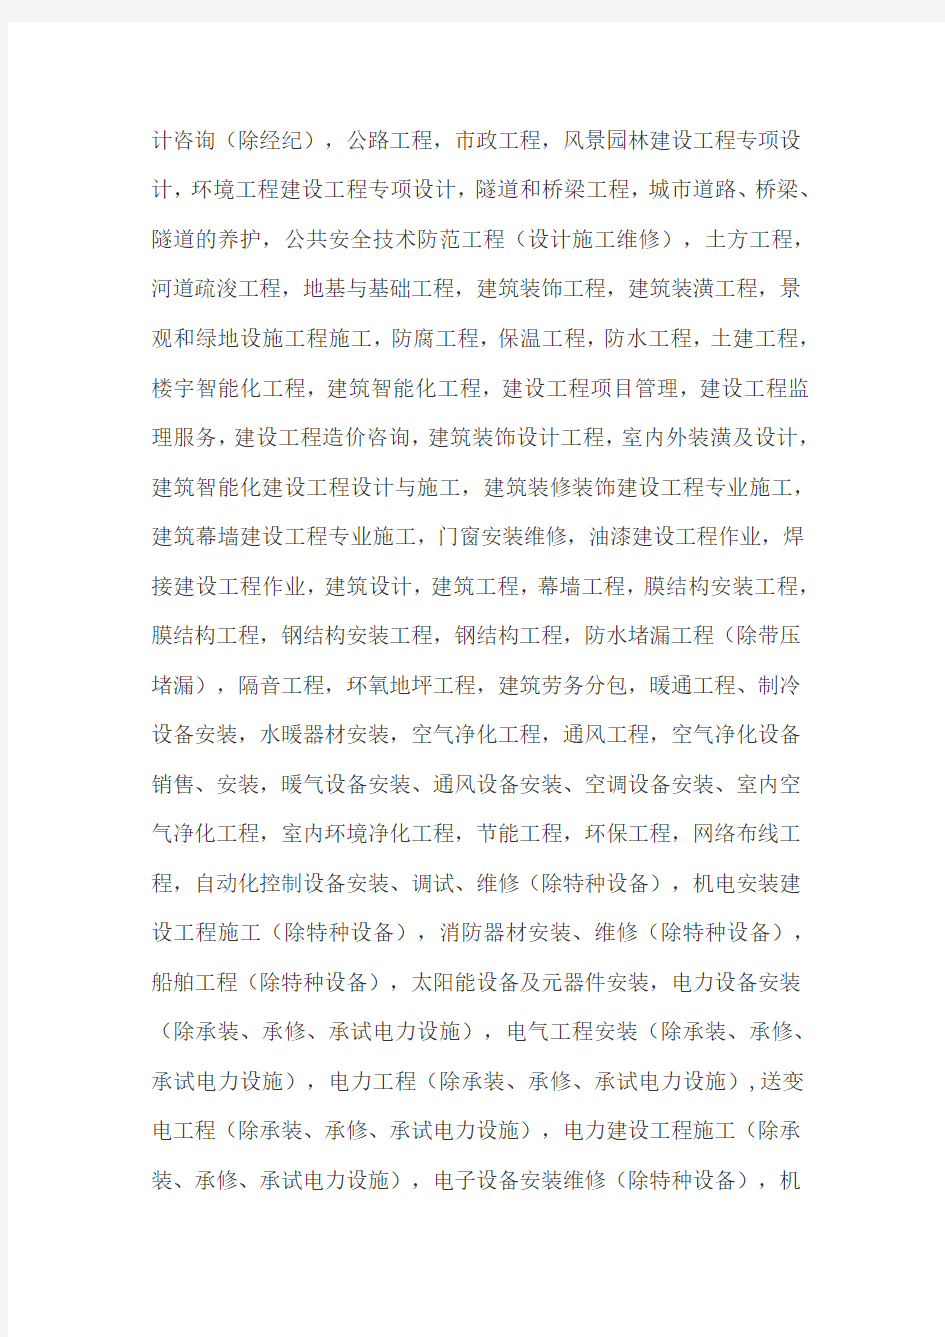 上海注册公司经营范围参考 最新版 